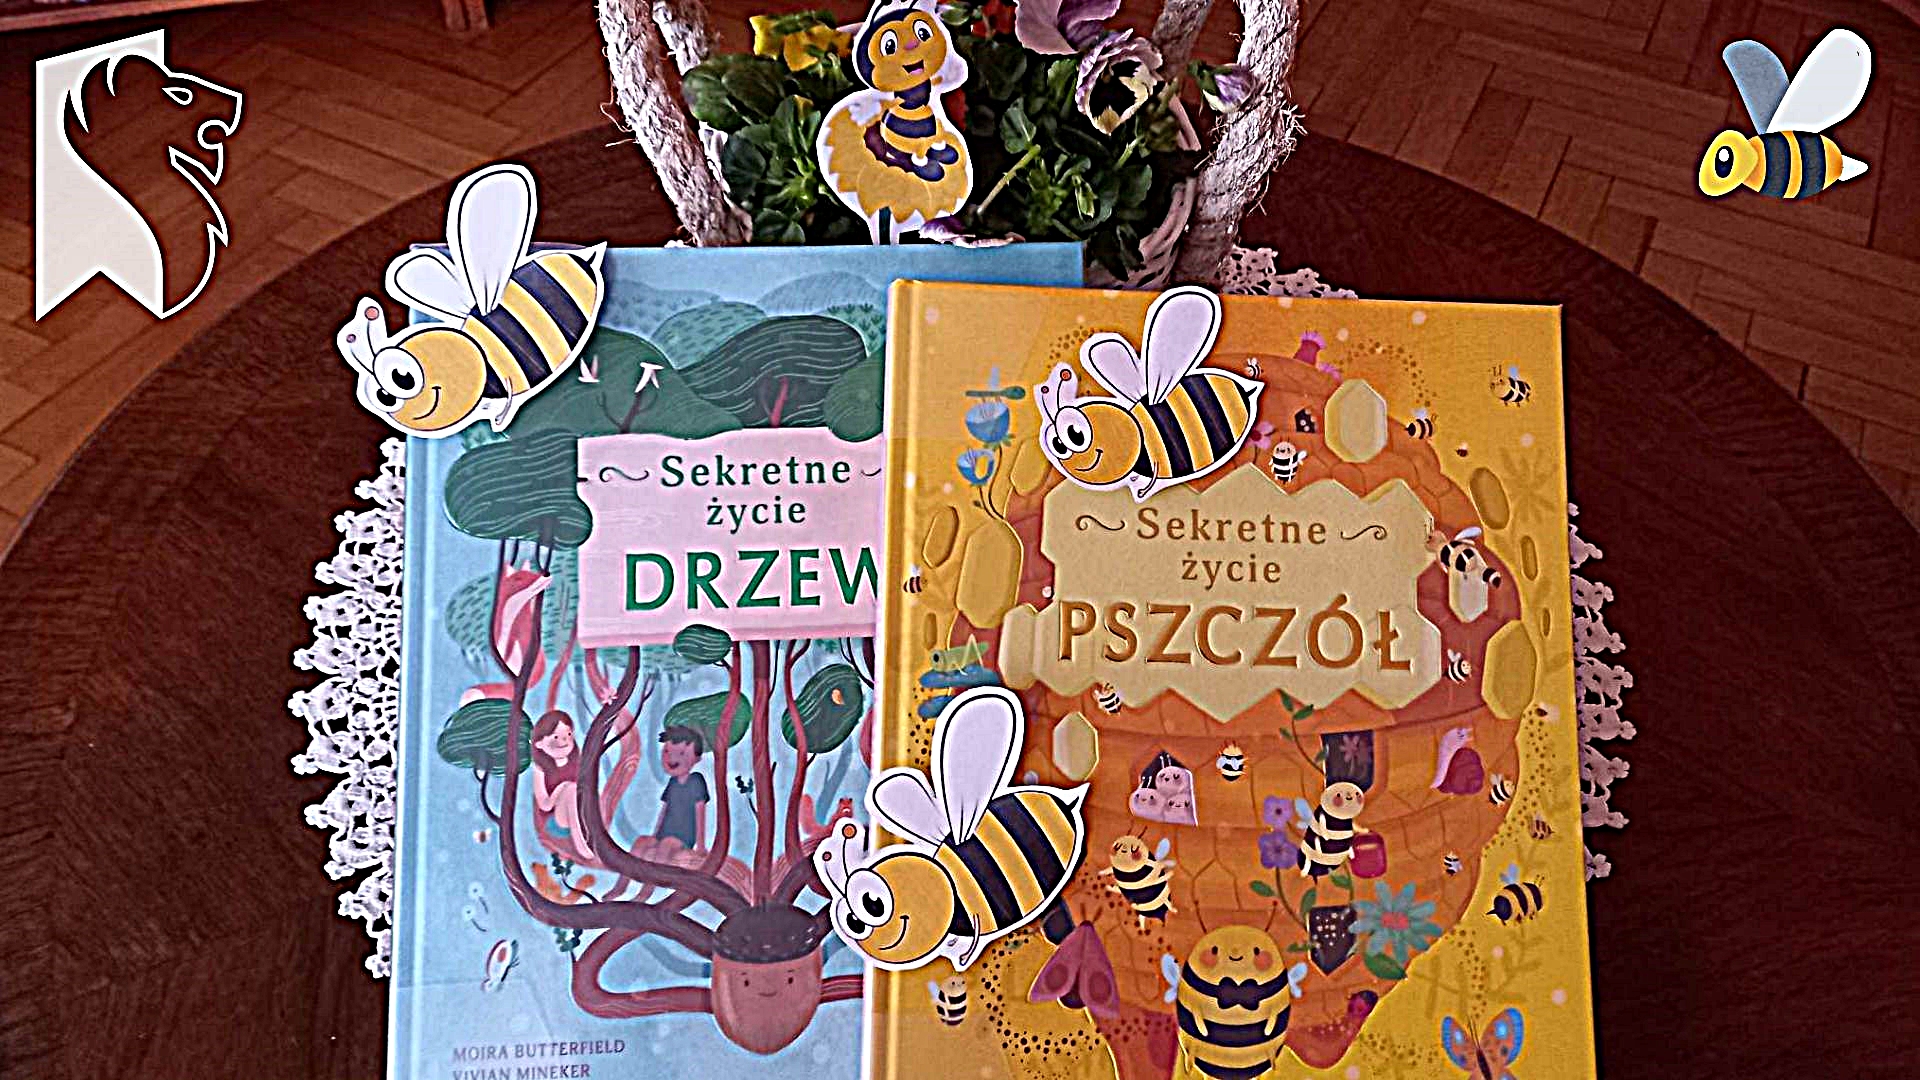 Okładki 2 książek Moiry Butterfield ,,Sekretne życie drzew" i ,,Sekretne życie pszczół". Za ksiązkami koszyk z bratkami. Na książkach oraz bratkach położone papierowe pszczółki.